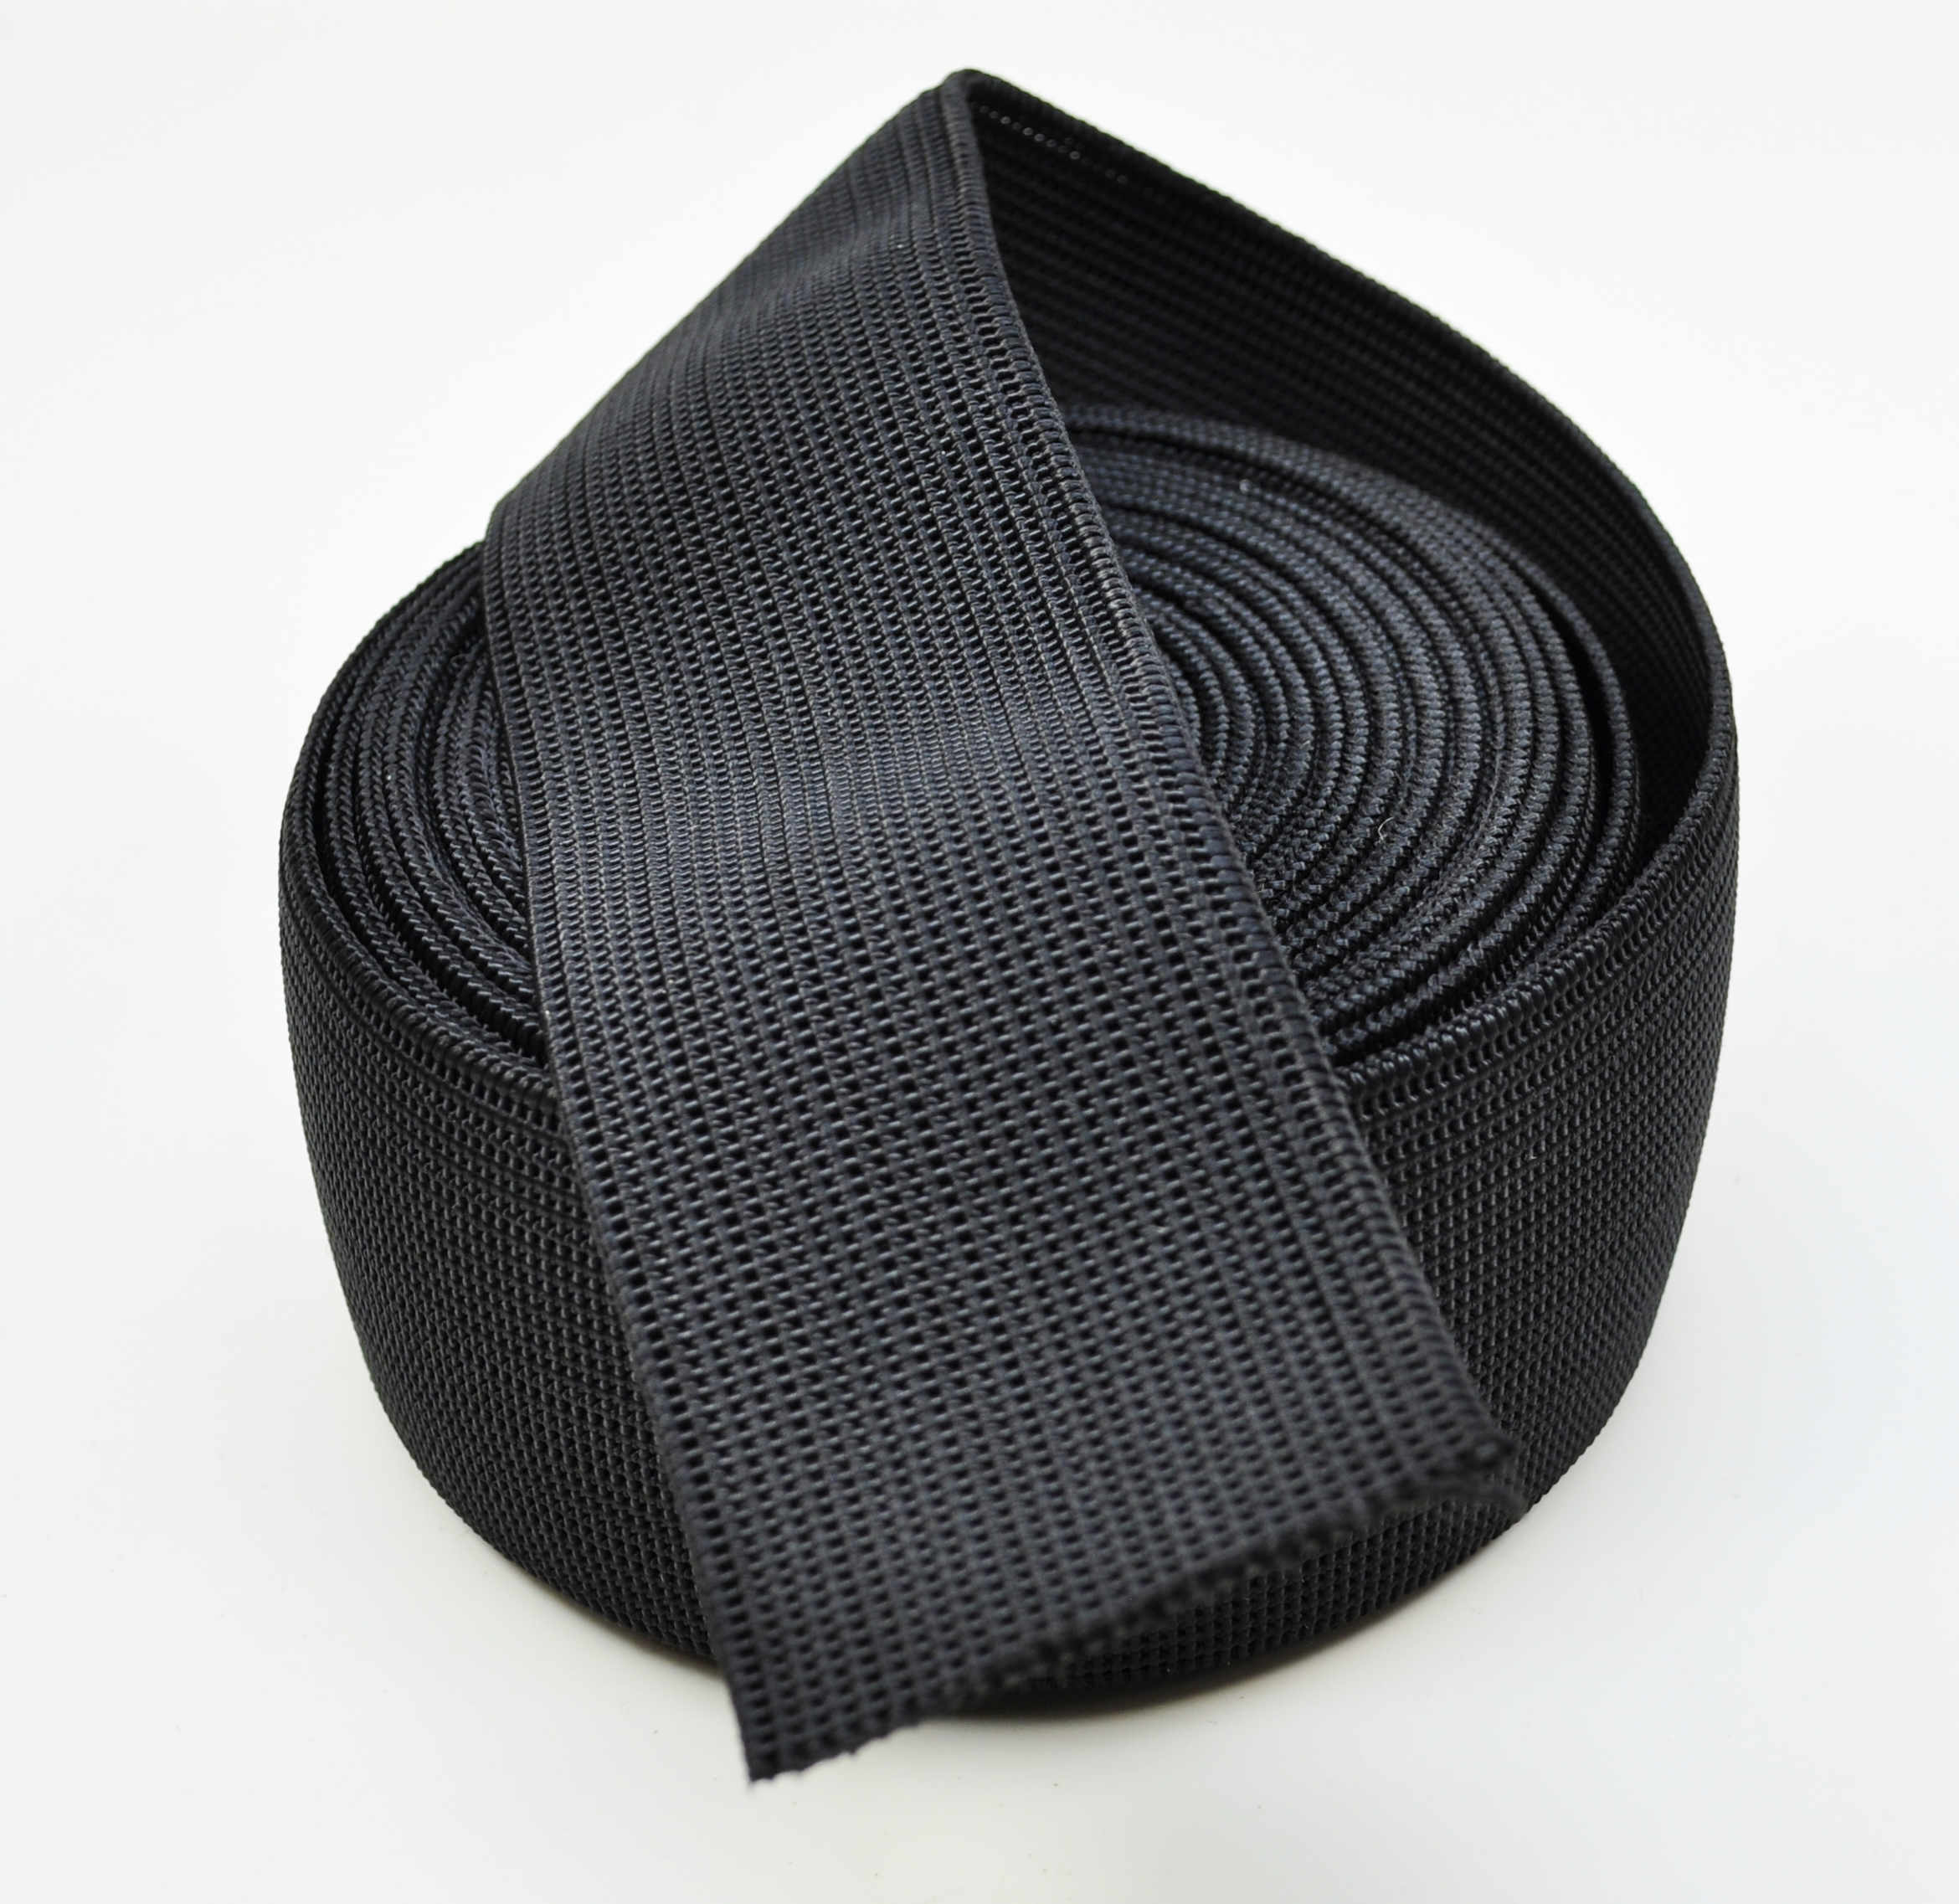 Sitzgurt elastisch, 60 x 1.8-2 mm, Schwarz, Ausdehnung 50%